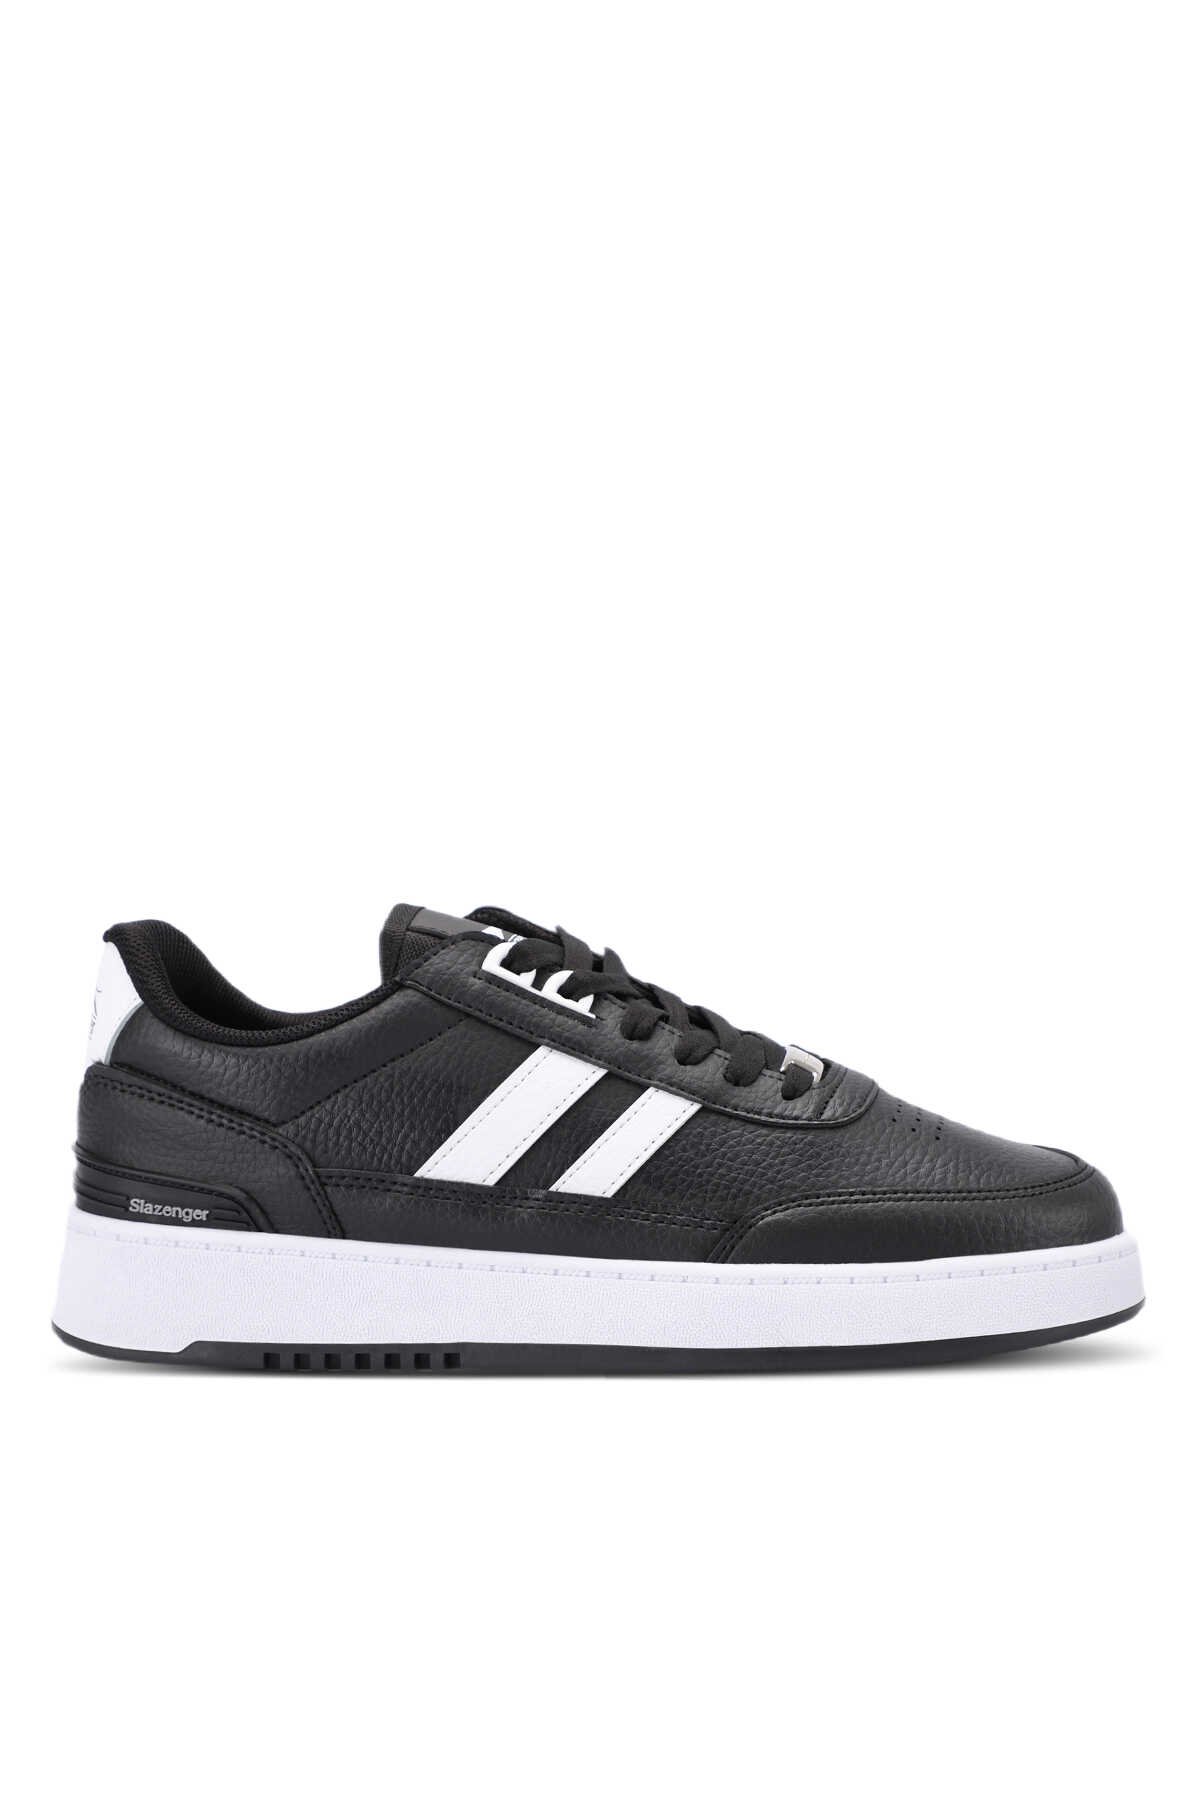 Slazenger - Slazenger DAPHNE Sneaker Kadın Ayakkabı Siyah / Beyaz